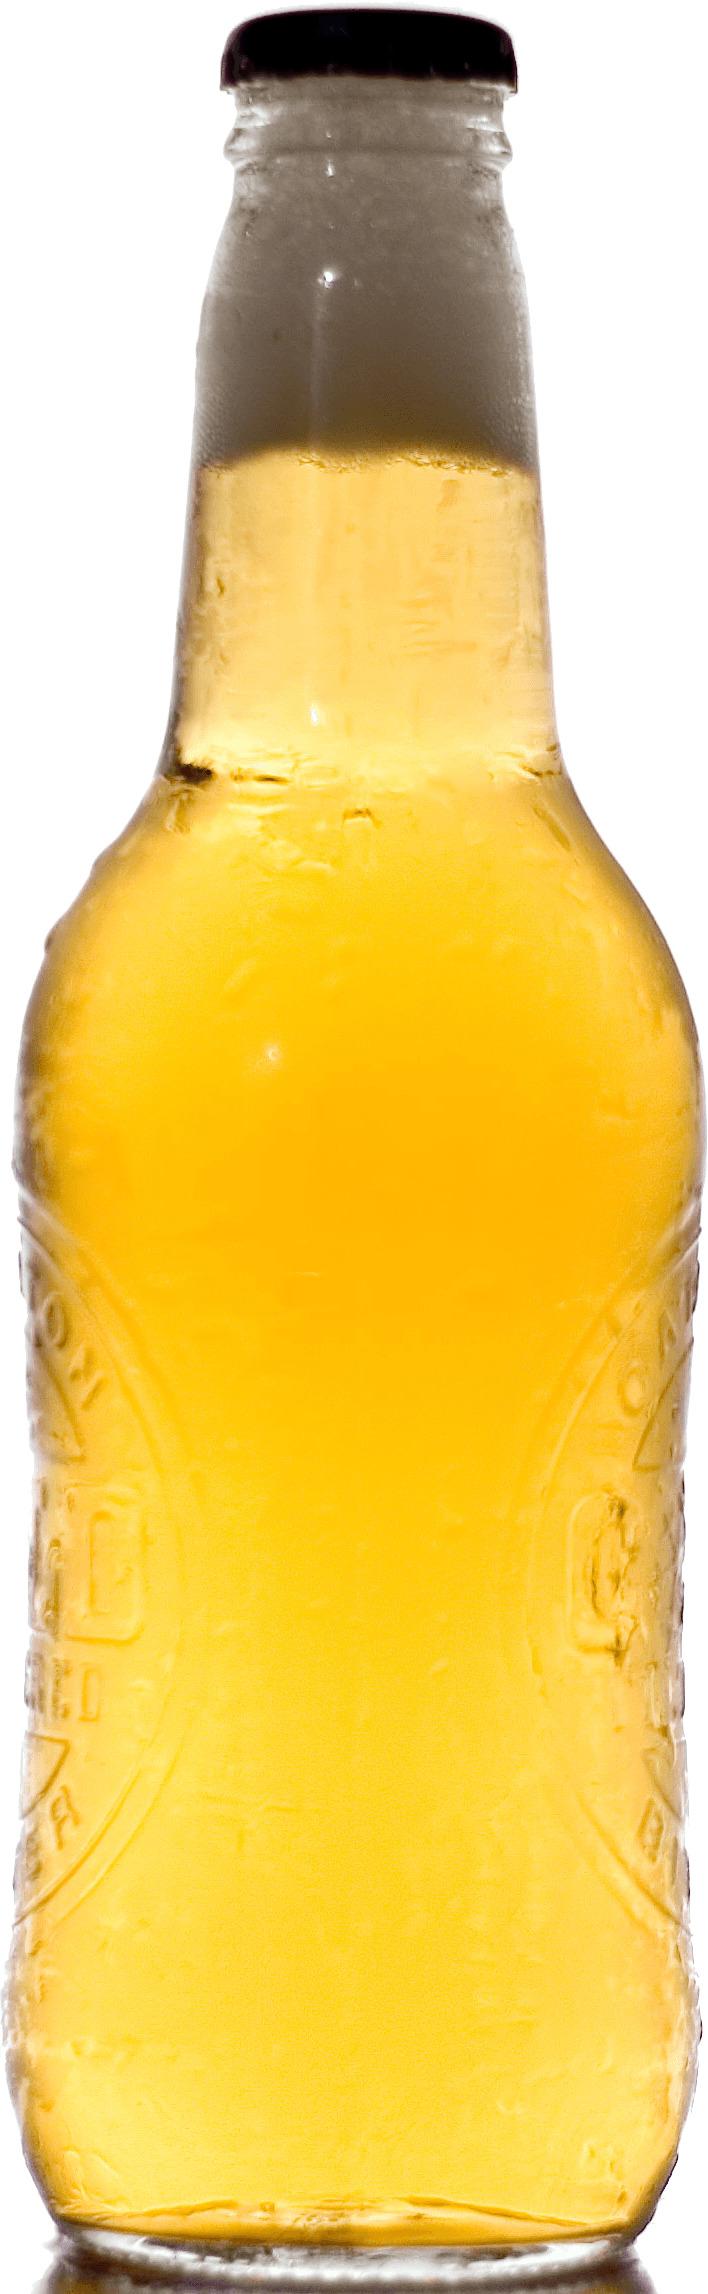 Beer Bottle png transparent